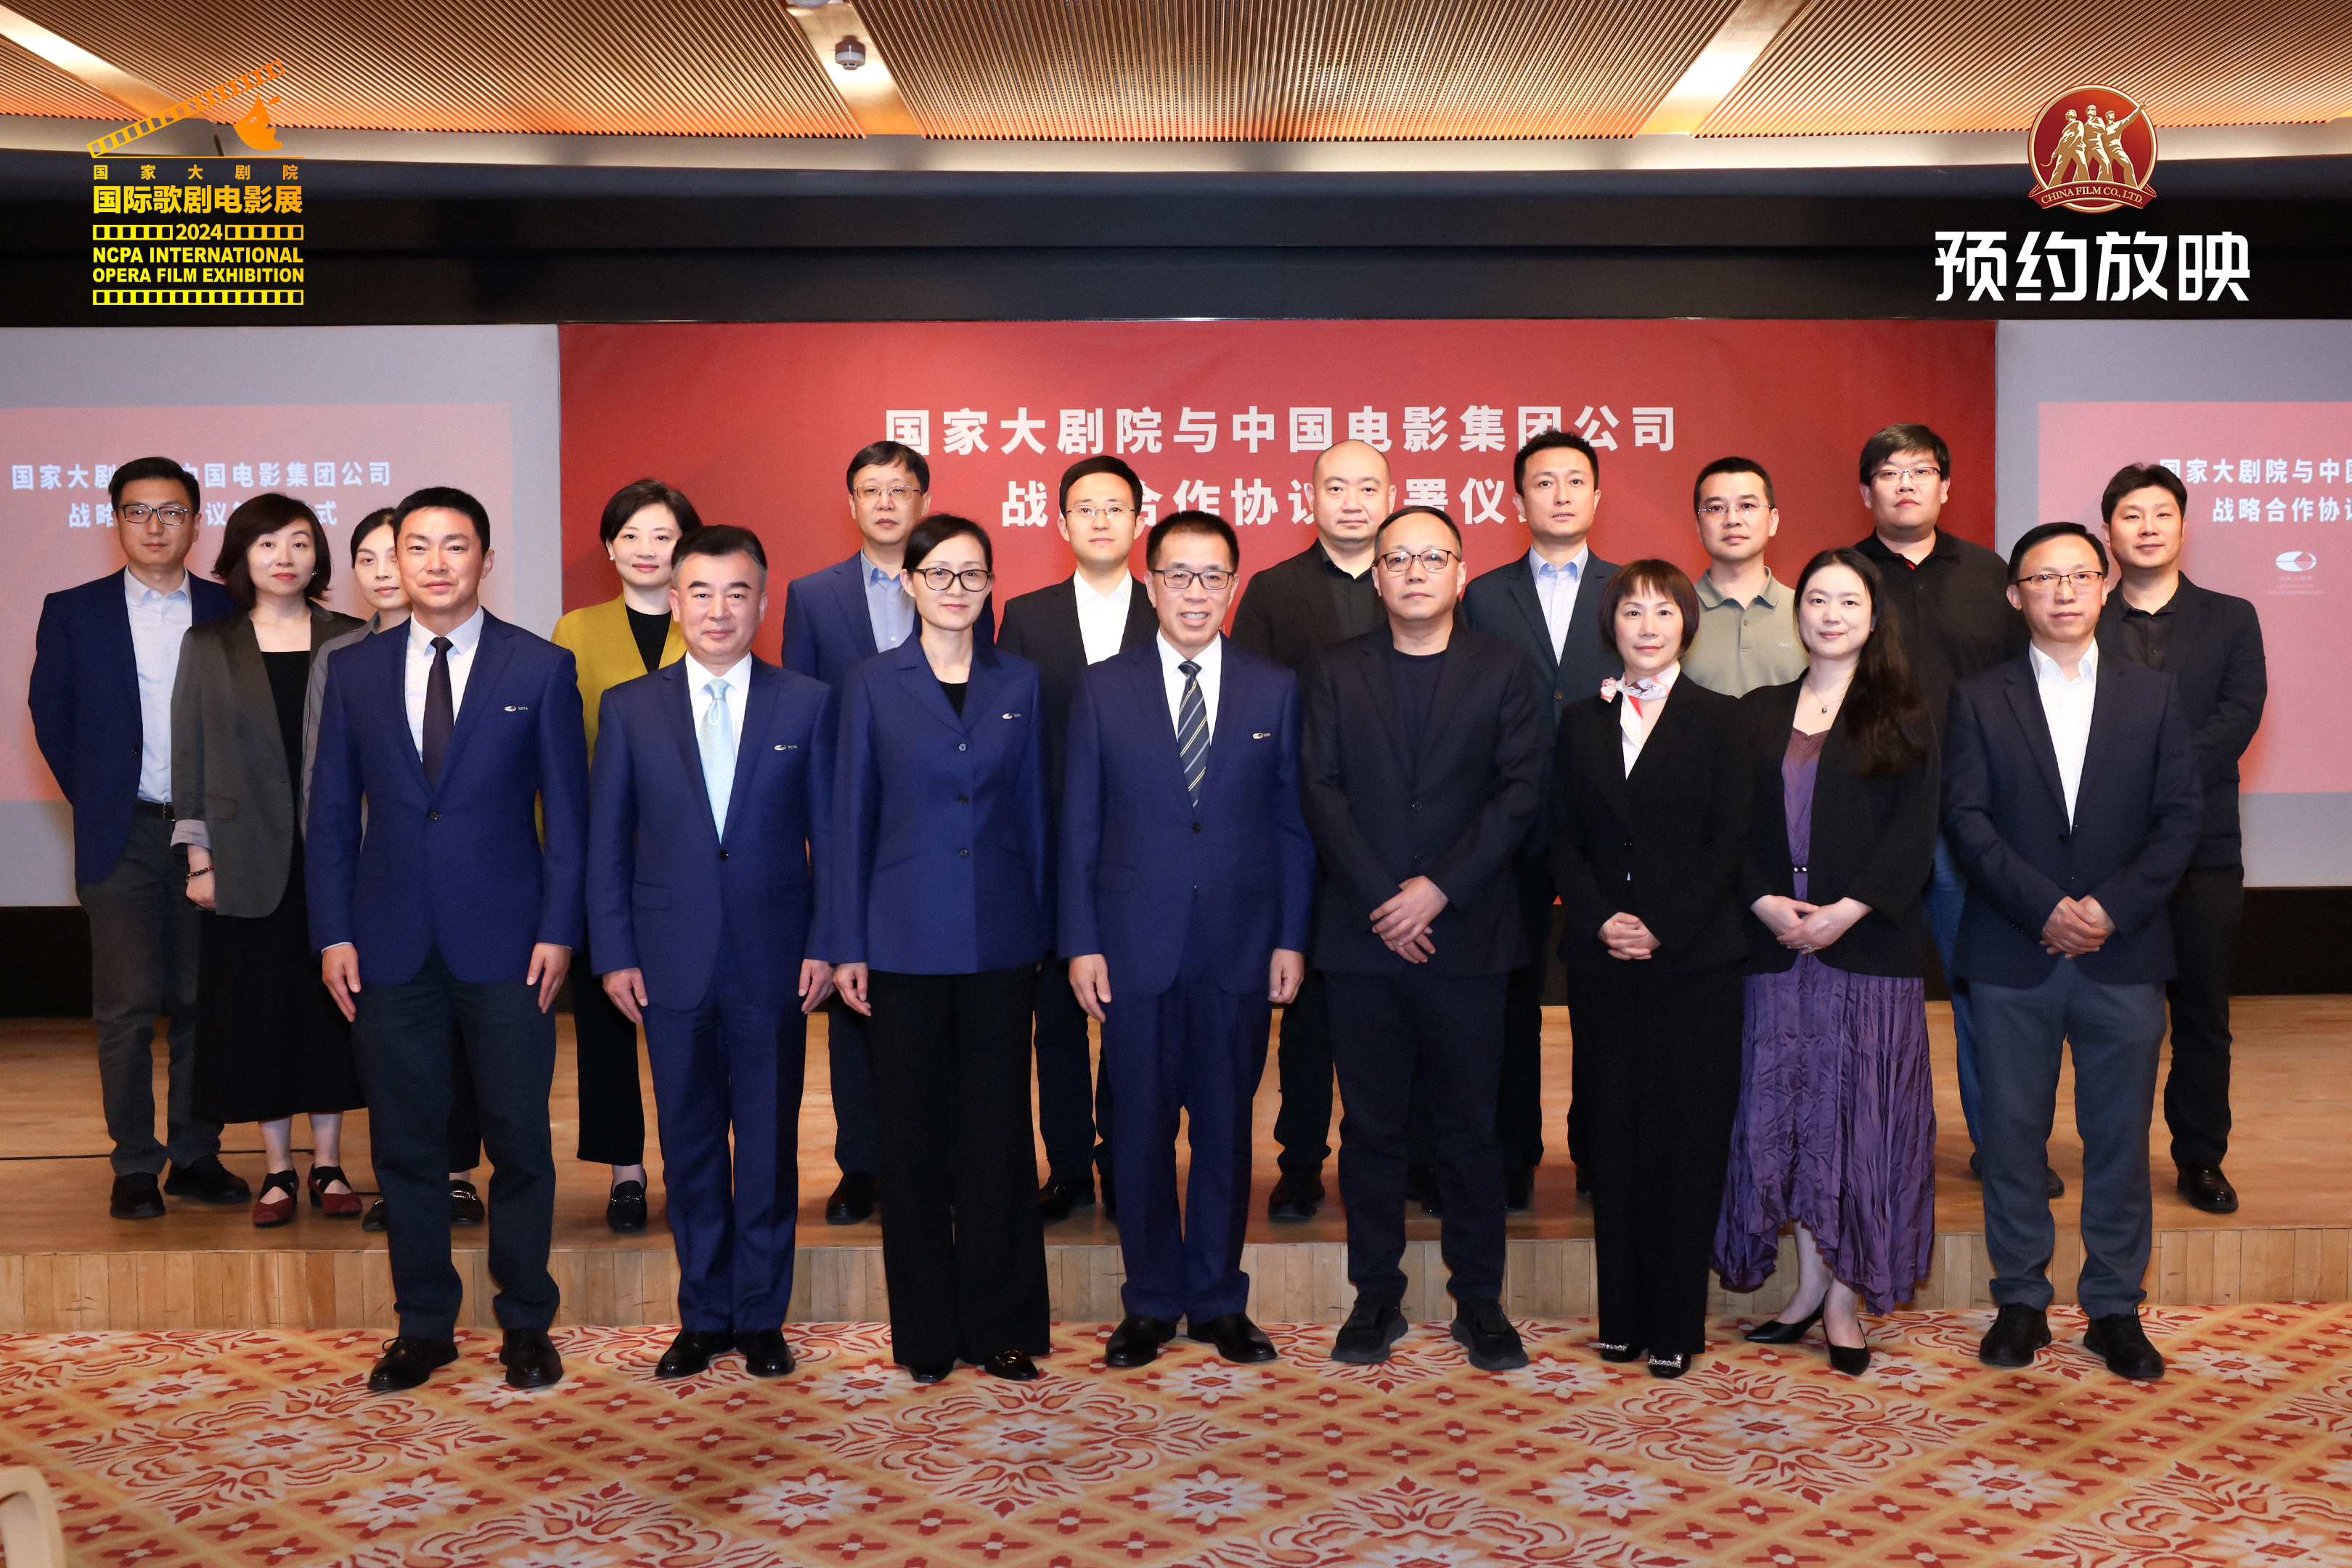 中国电影集团公司与国家大剧院签署战略合作协议